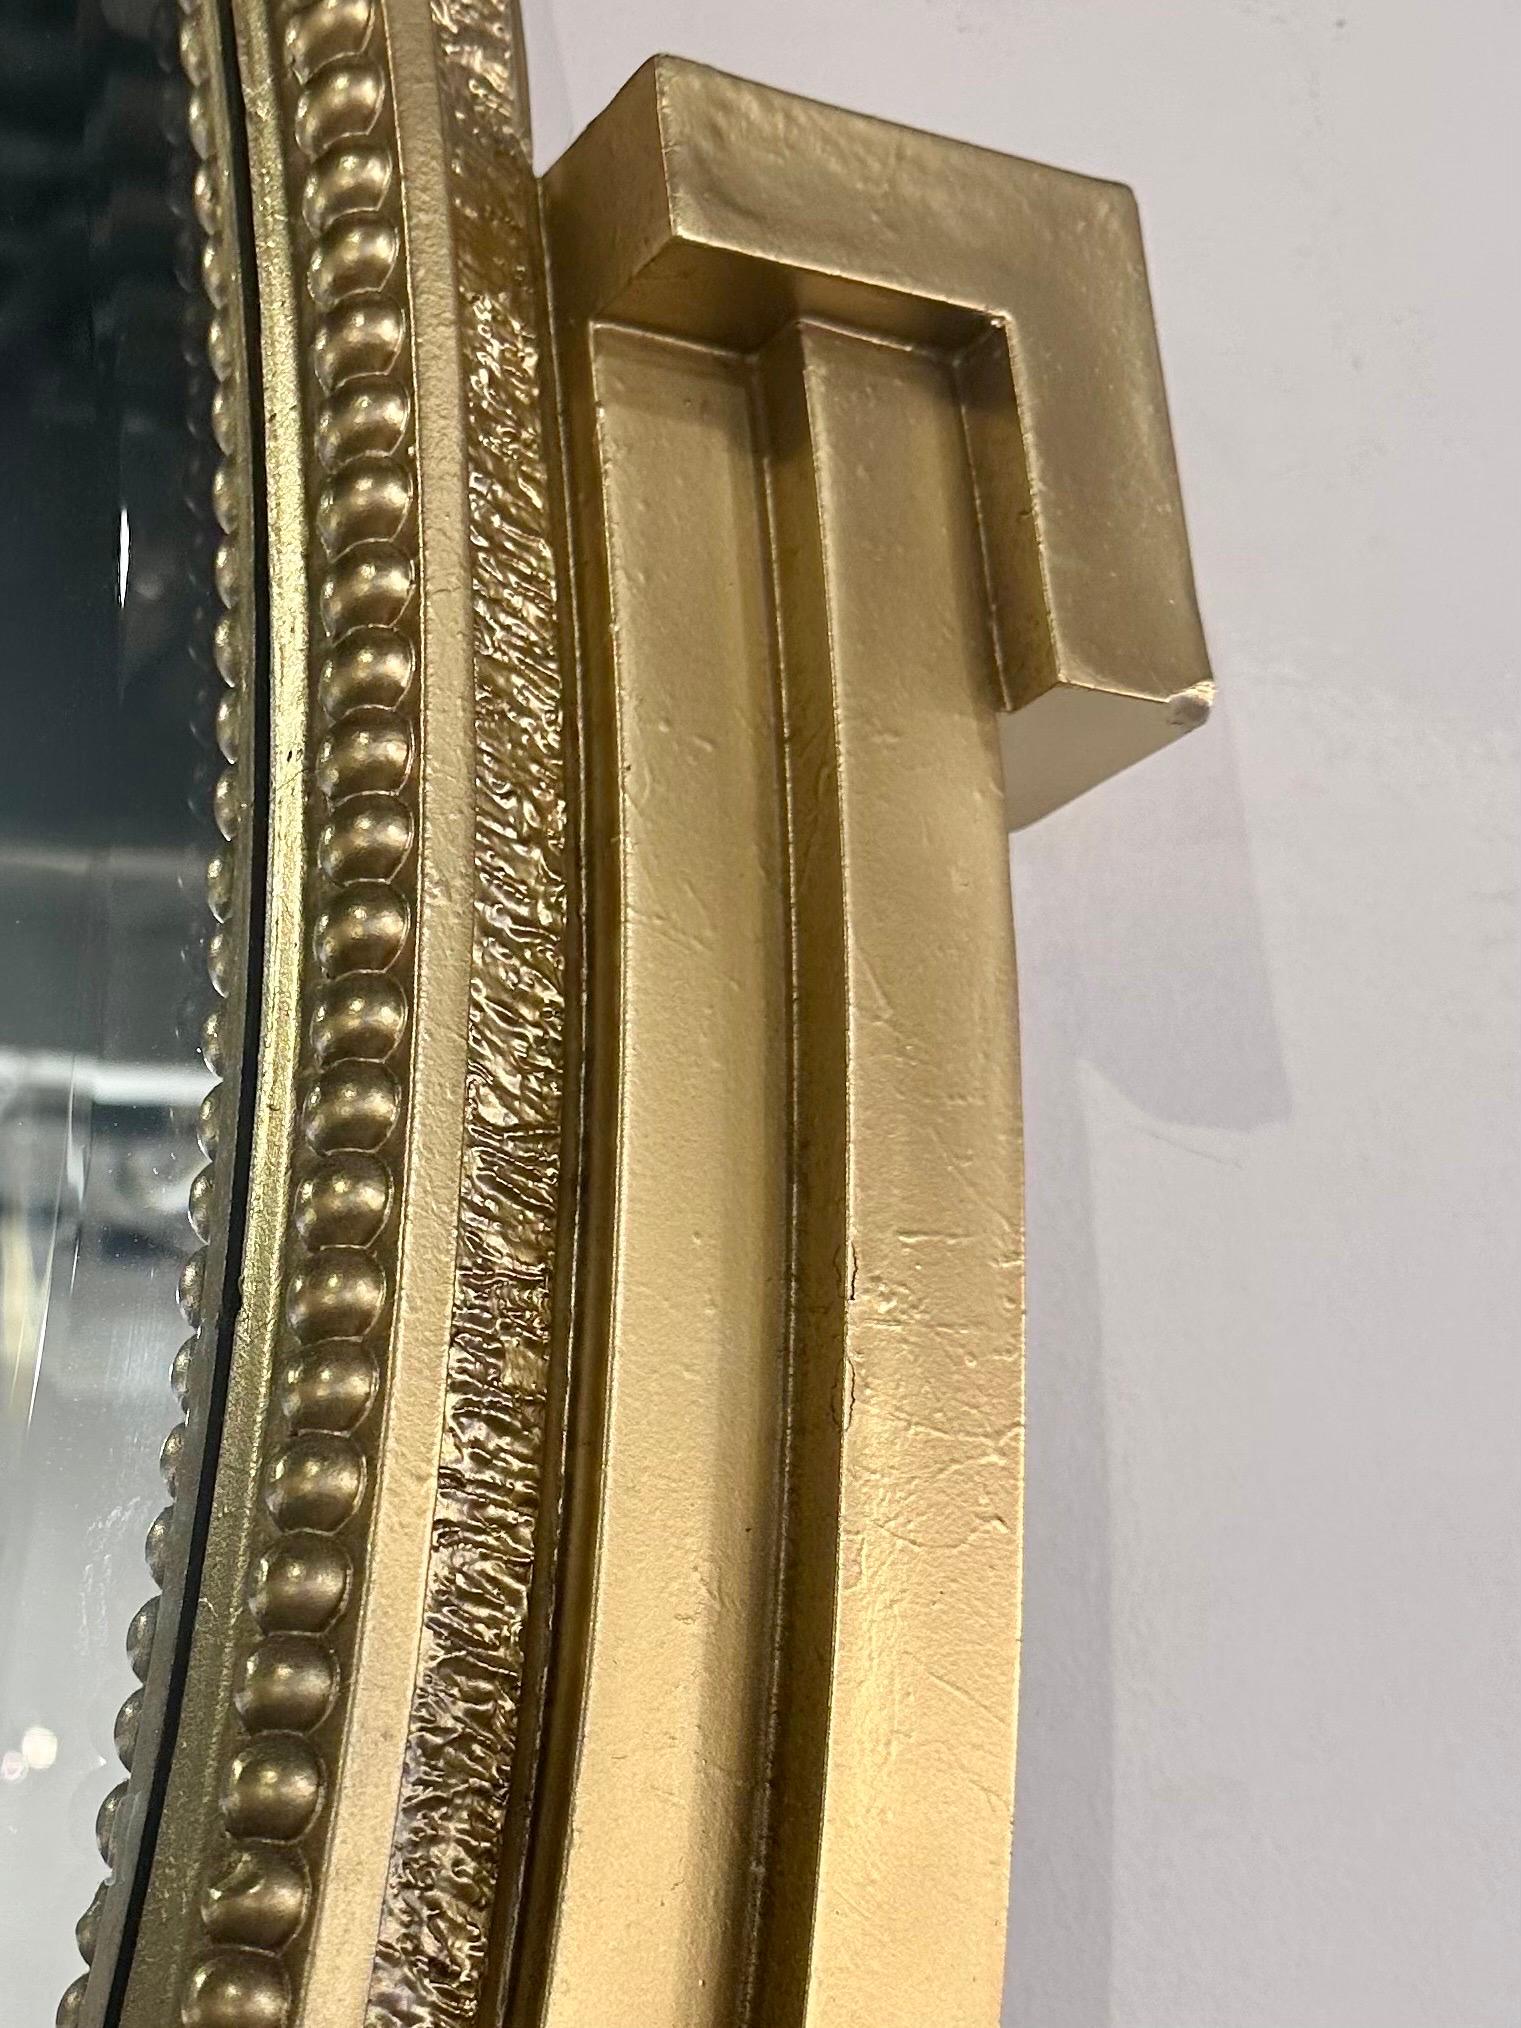 Une superbe paire de cadres ovales néoclassiques français en bois doré avec miroirs biseautés. Ces deux pièces élégantes sont en très bon état et prêtes à être accrochées. 